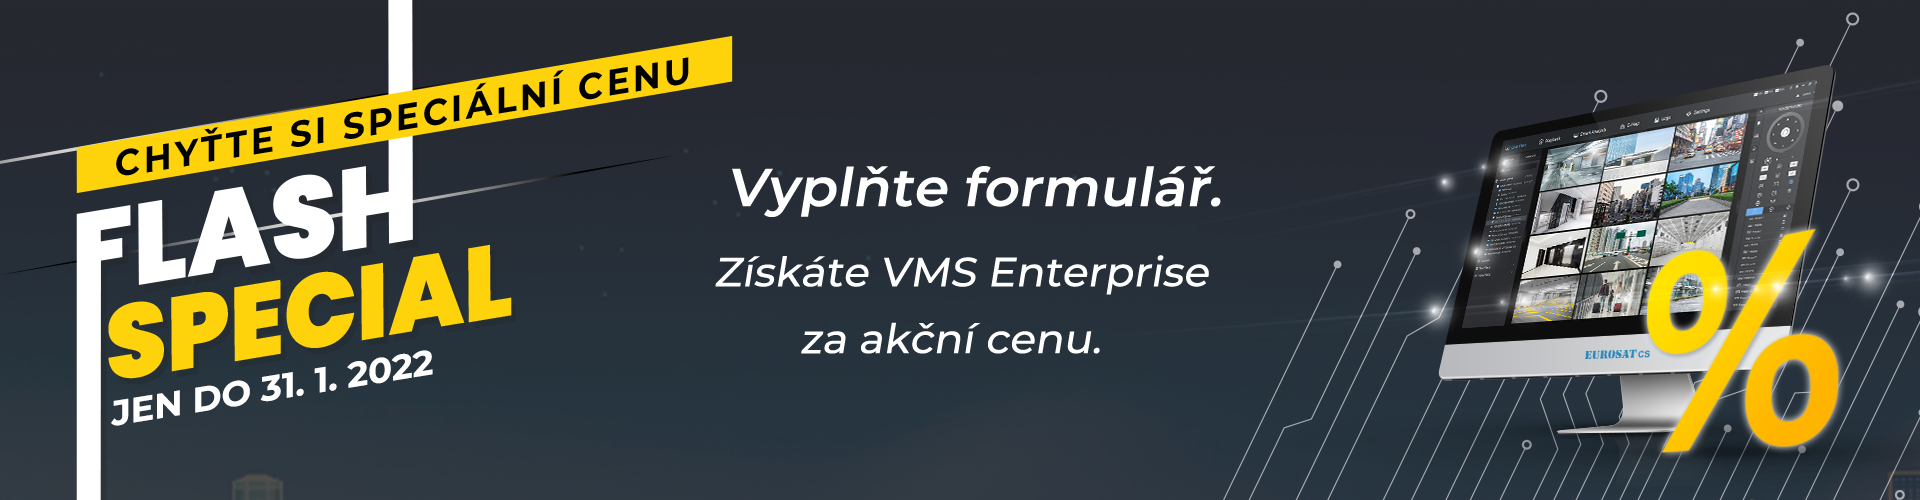 VMS Enterprise za akční cenu